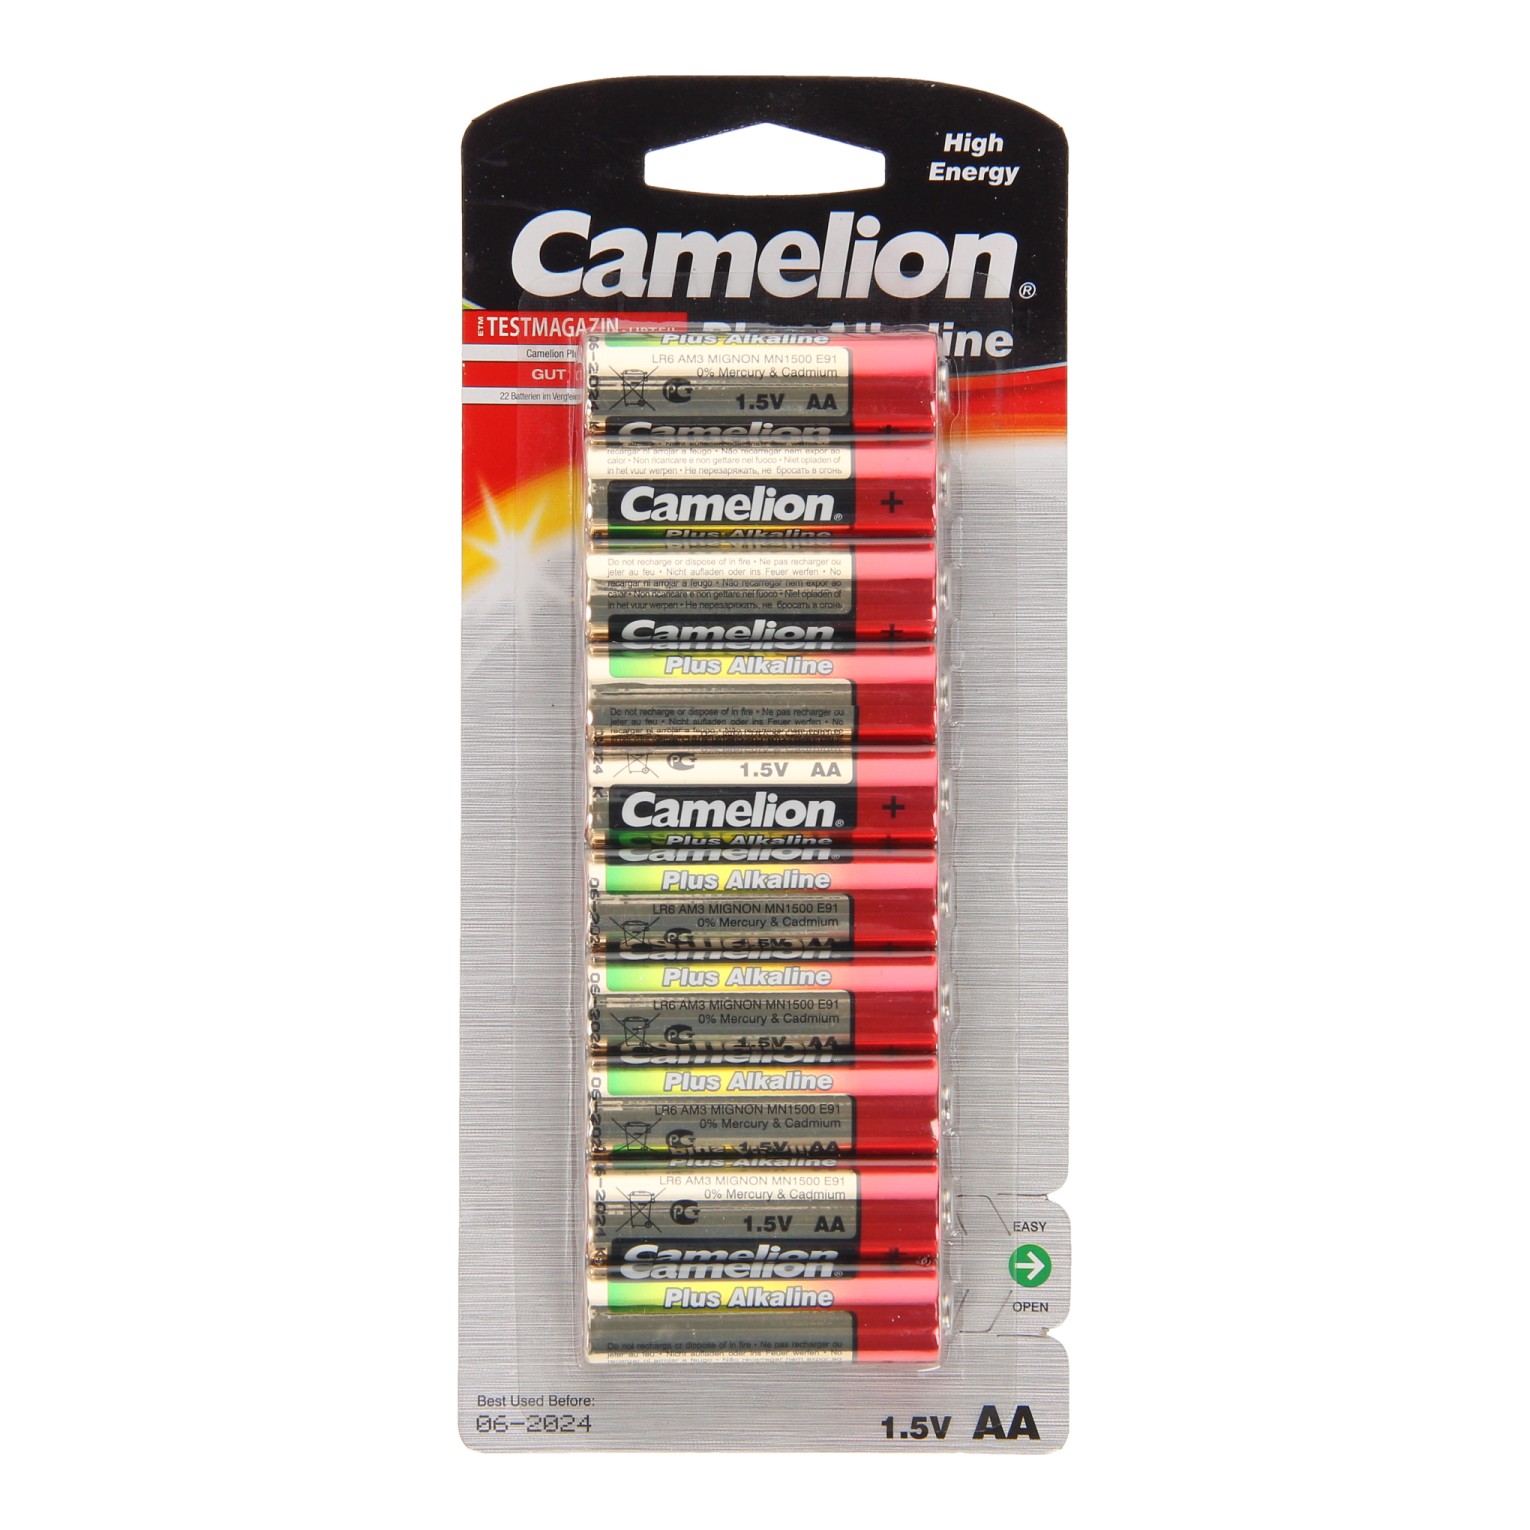 Camelion Plus Batterij Alkaline AA/LR6